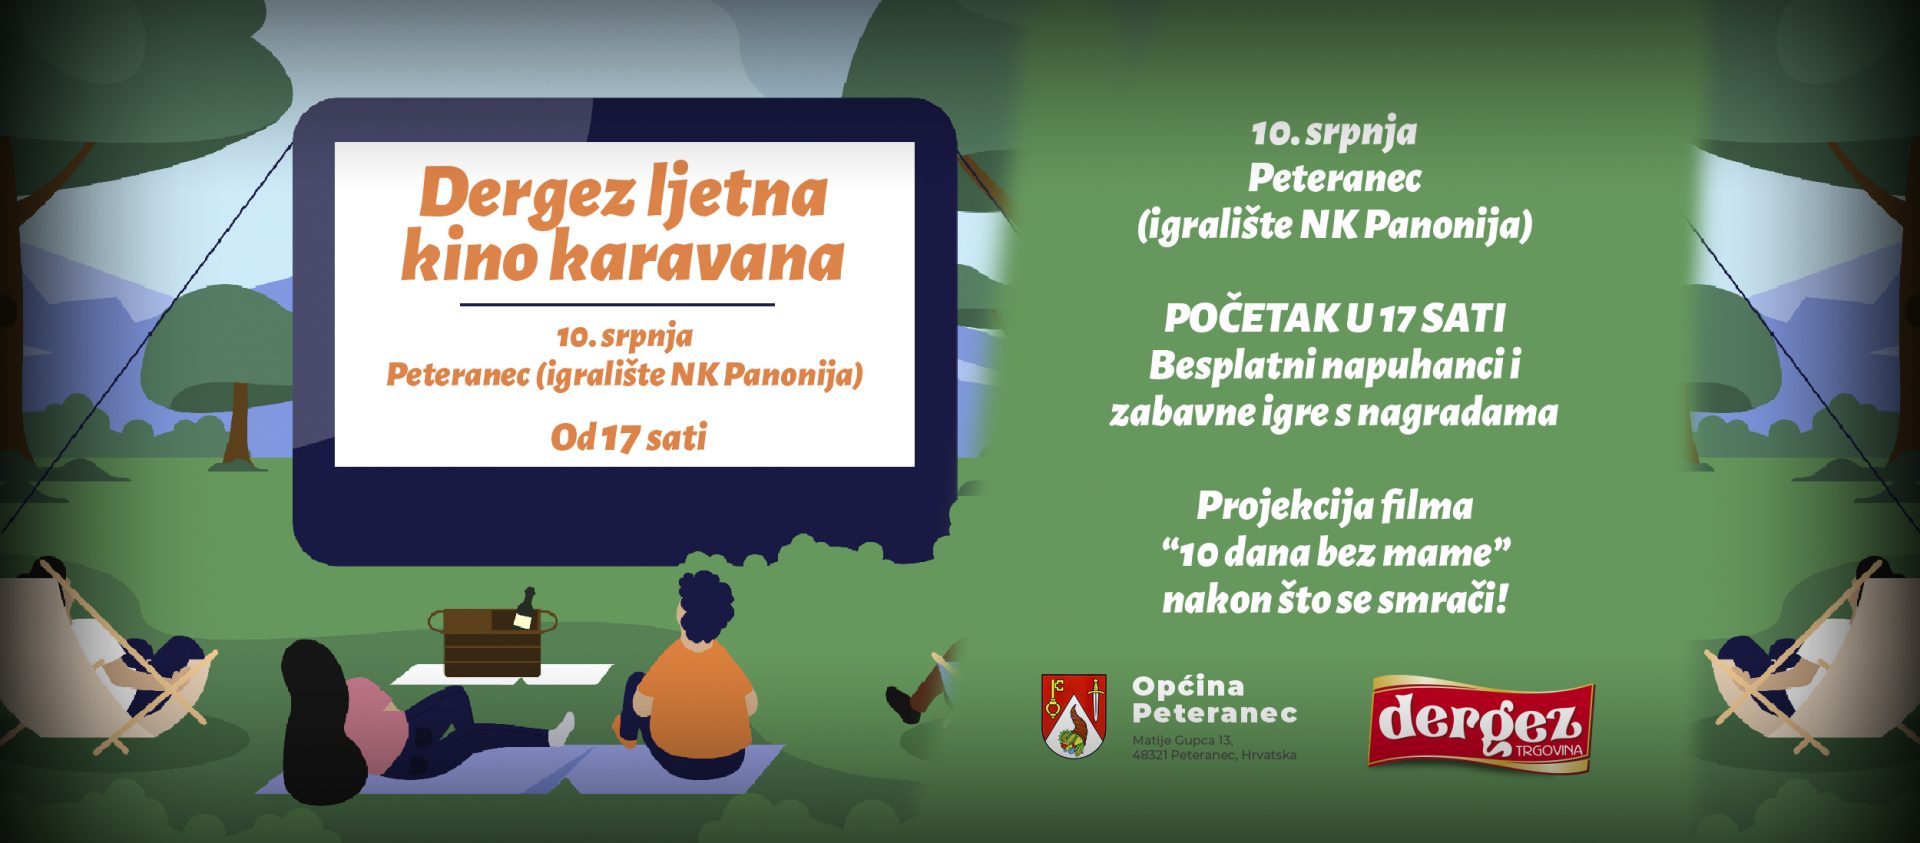 Dergez i Općina Peteranec vas pozivaju na kino na otvorenom u Peterancu